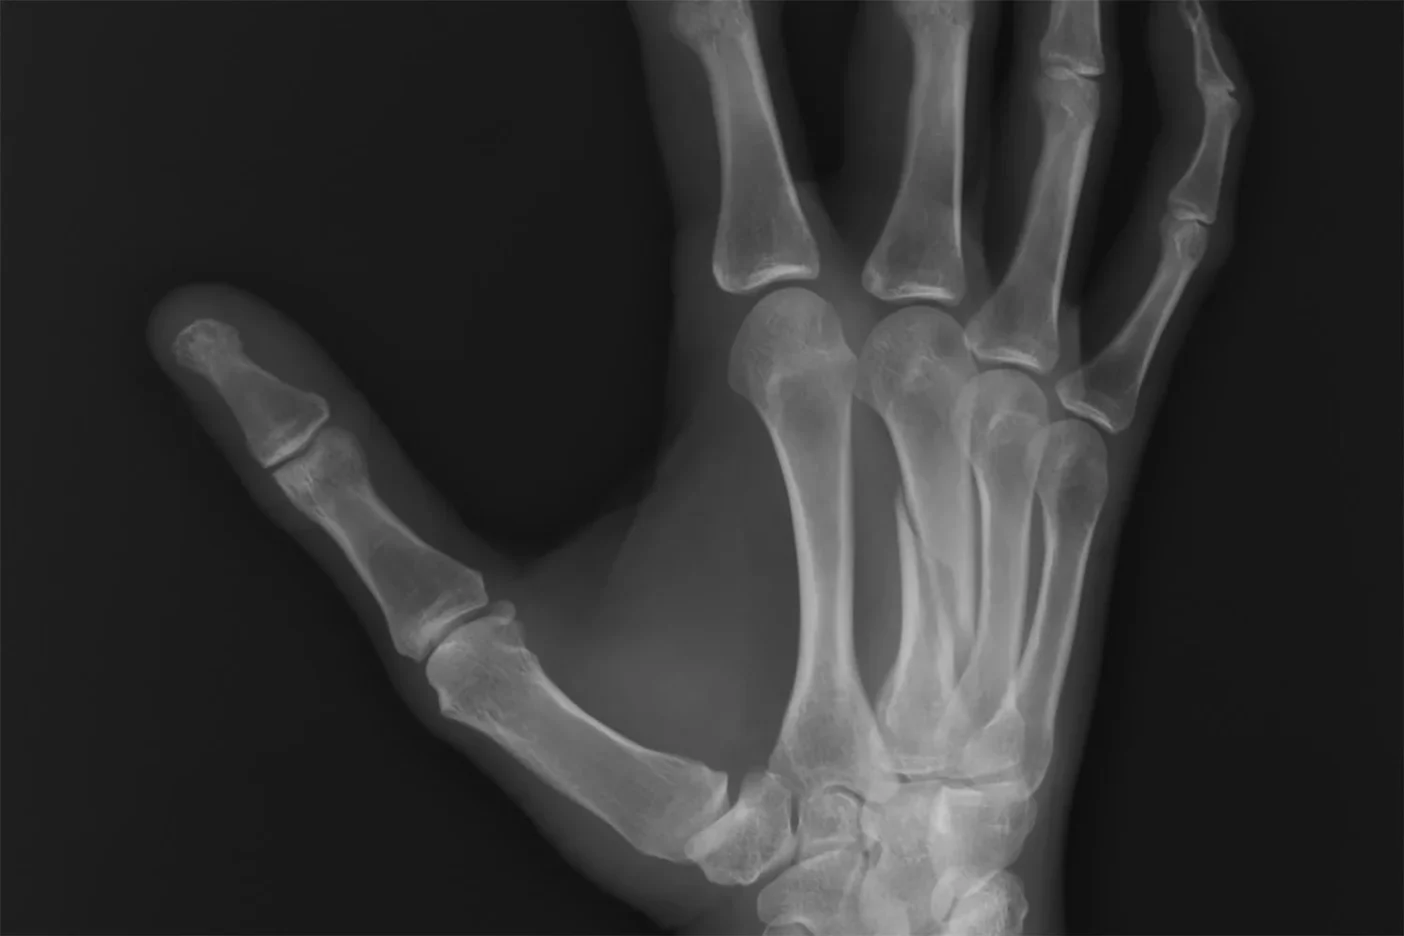 x-ray of broken metacarpal bone